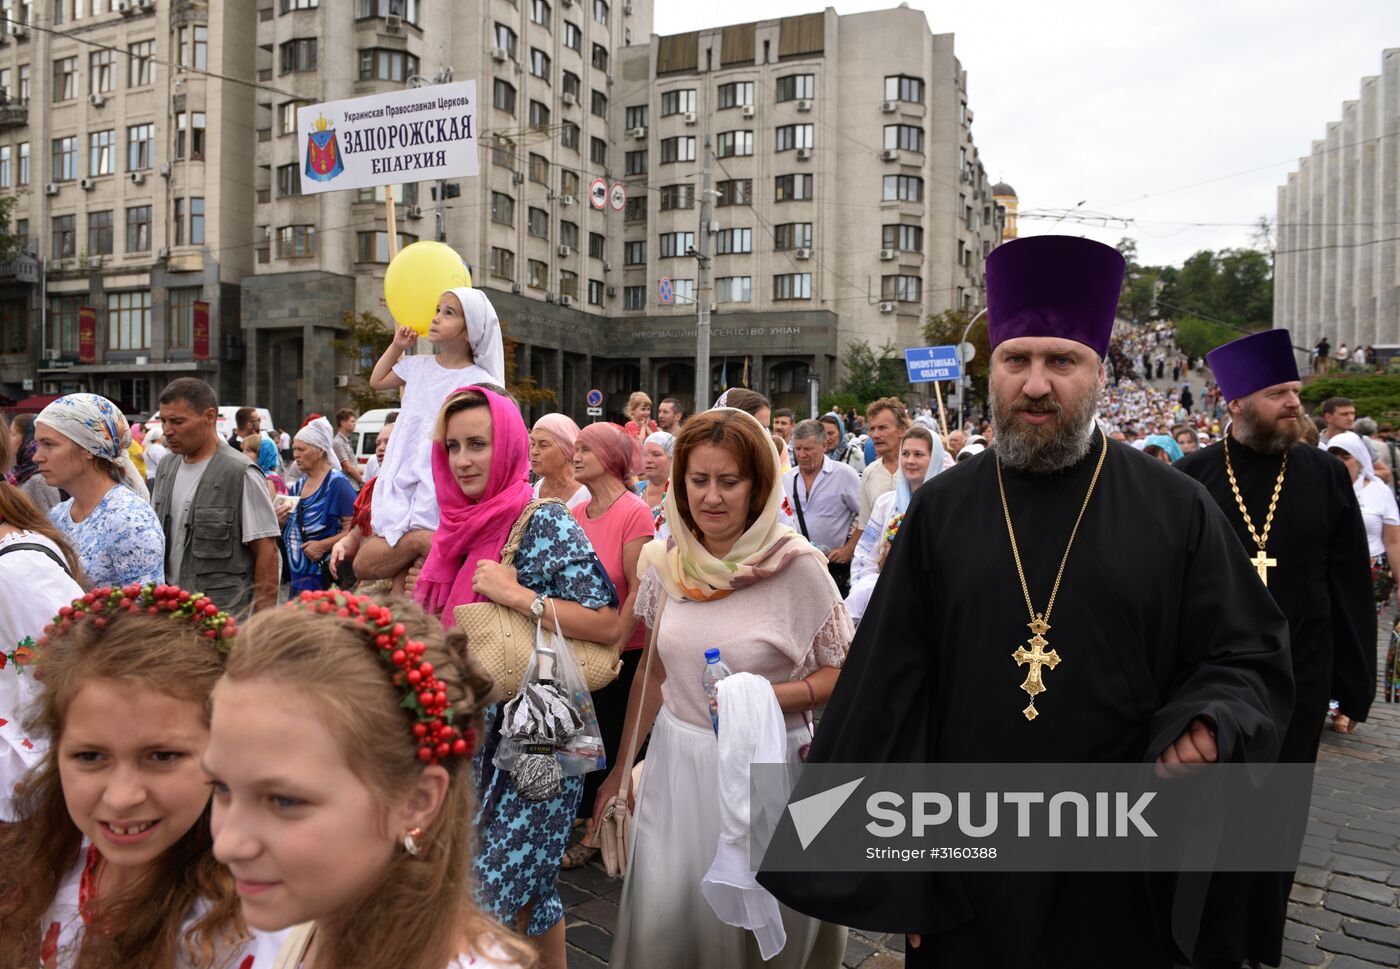 Religious procession in Kiev